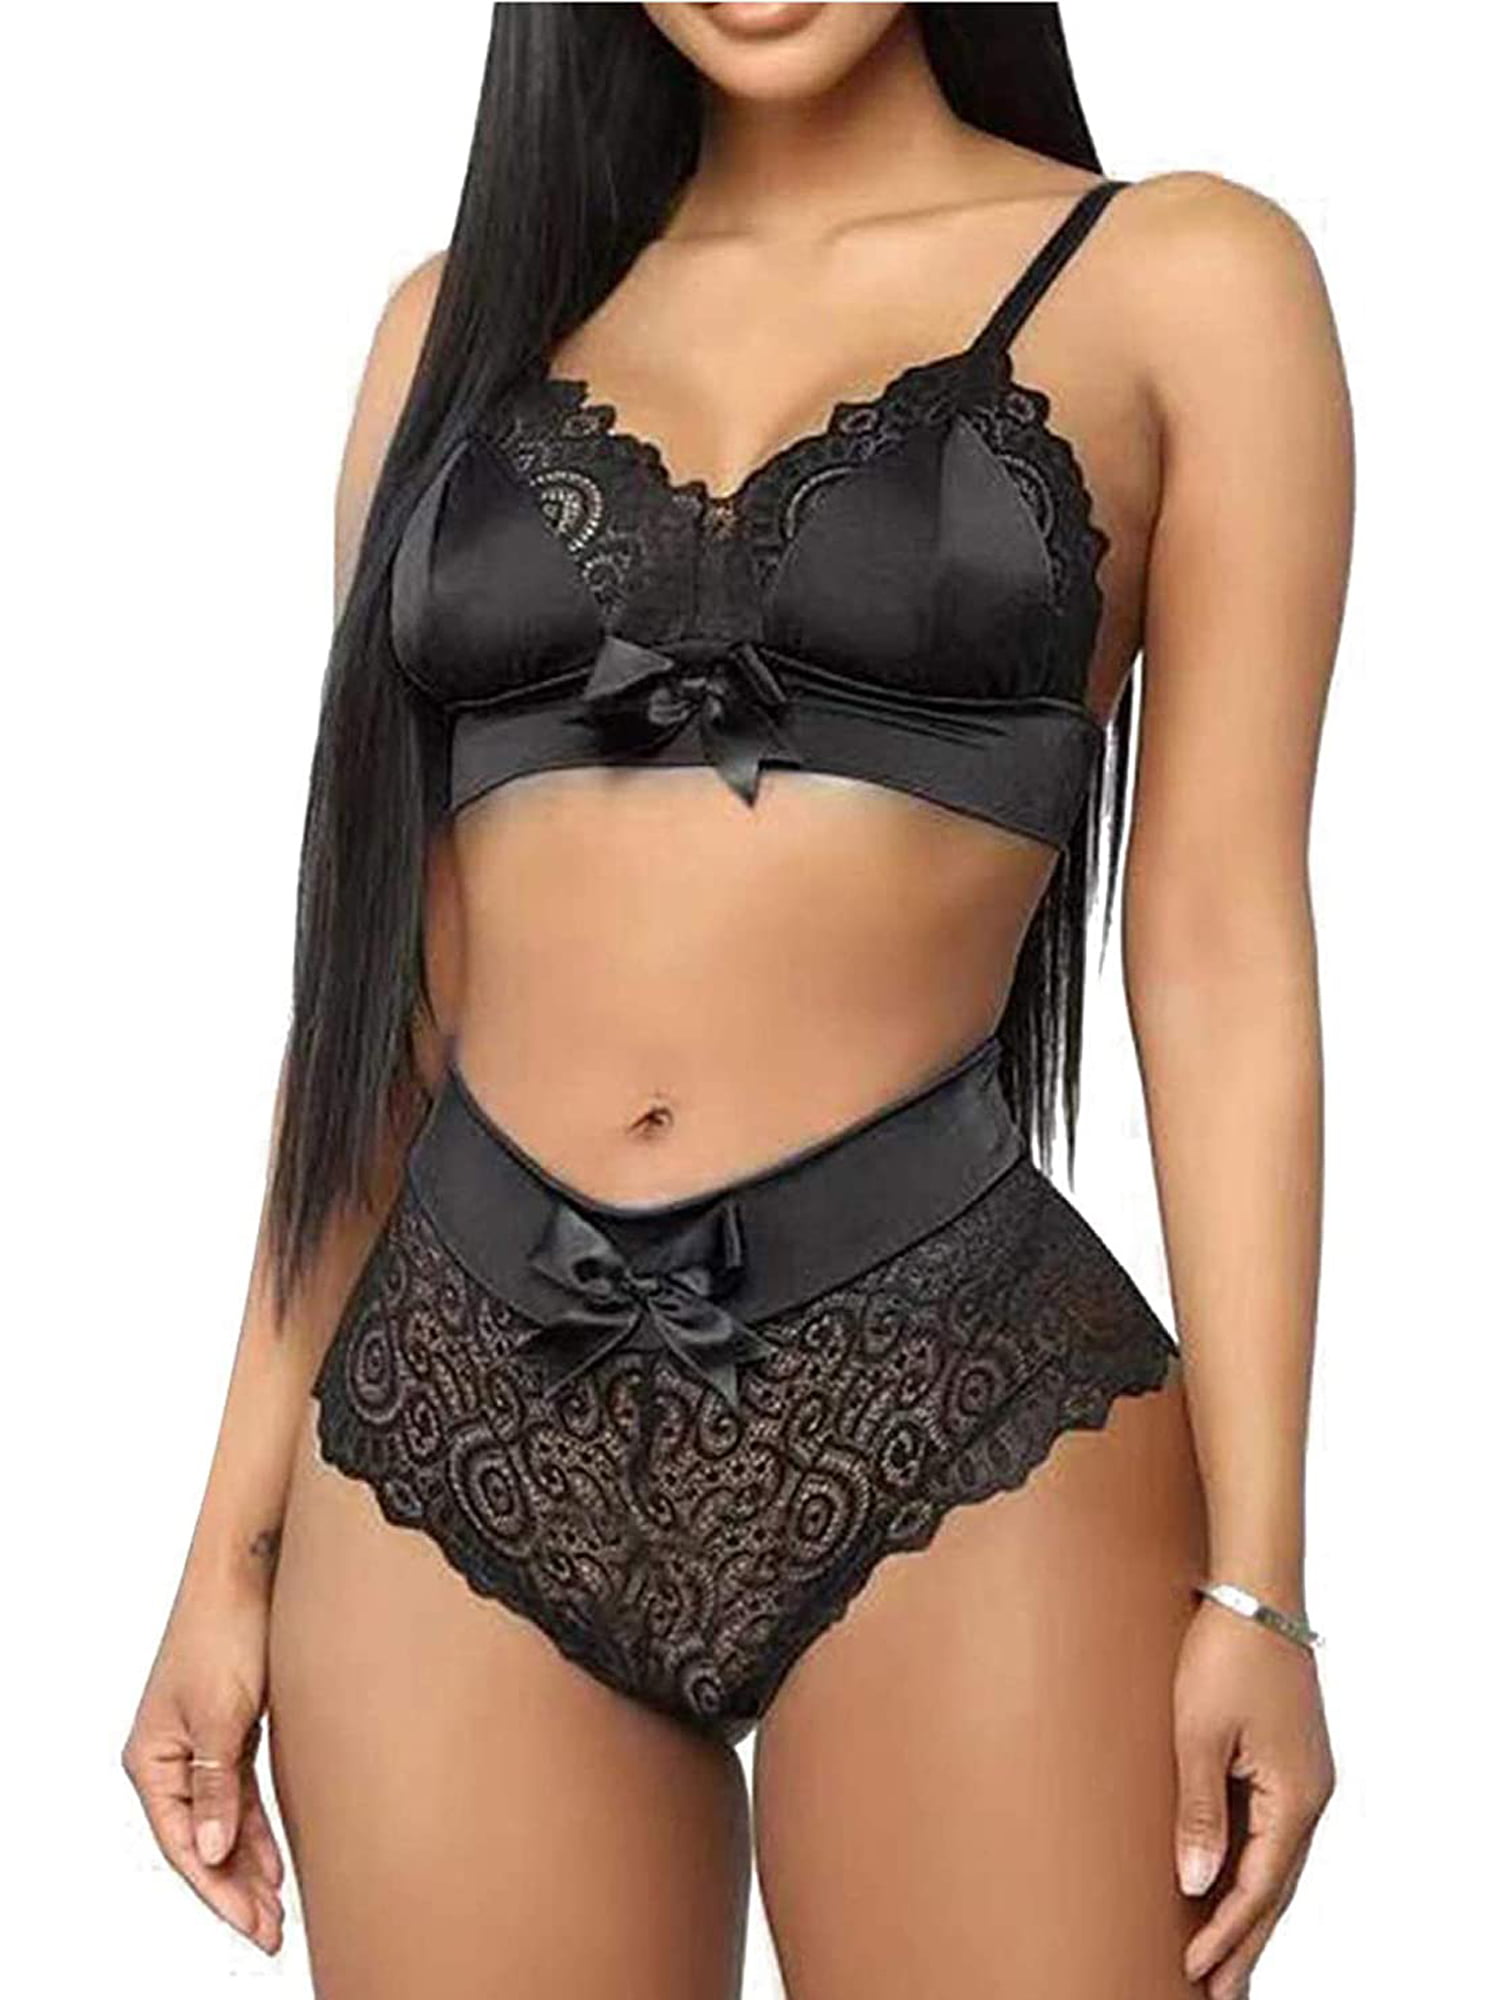 Sexy Women 2pcs Black/White Lace Underwear Suit Size M